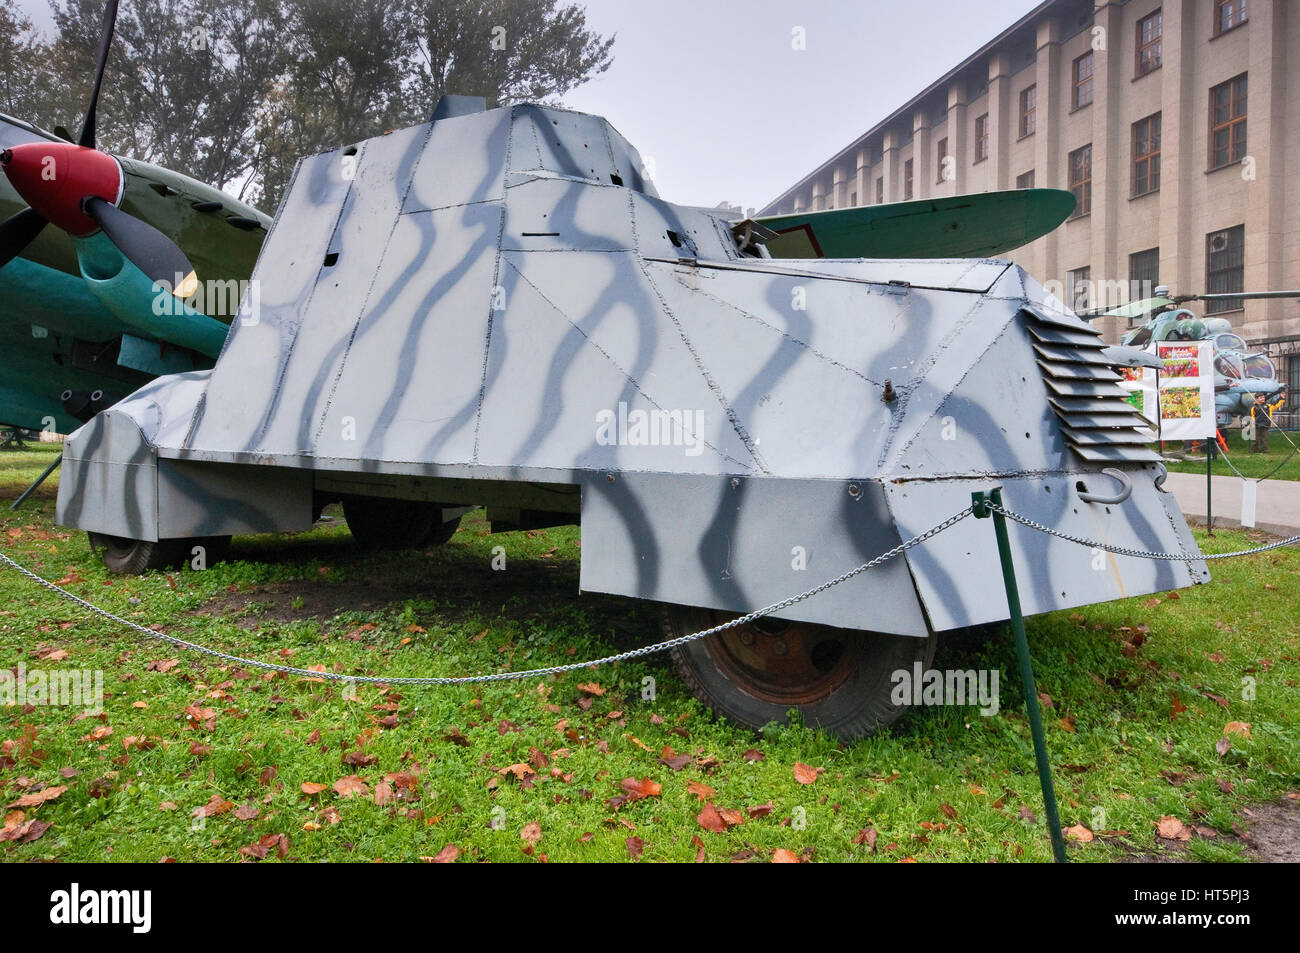 Kubus voiture blindée, Polonaise WWII véhicule, utilisé en 1944 Insurrection de Varsovie, Musée de l'armée polonaise à Varsovie, Pologne Banque D'Images